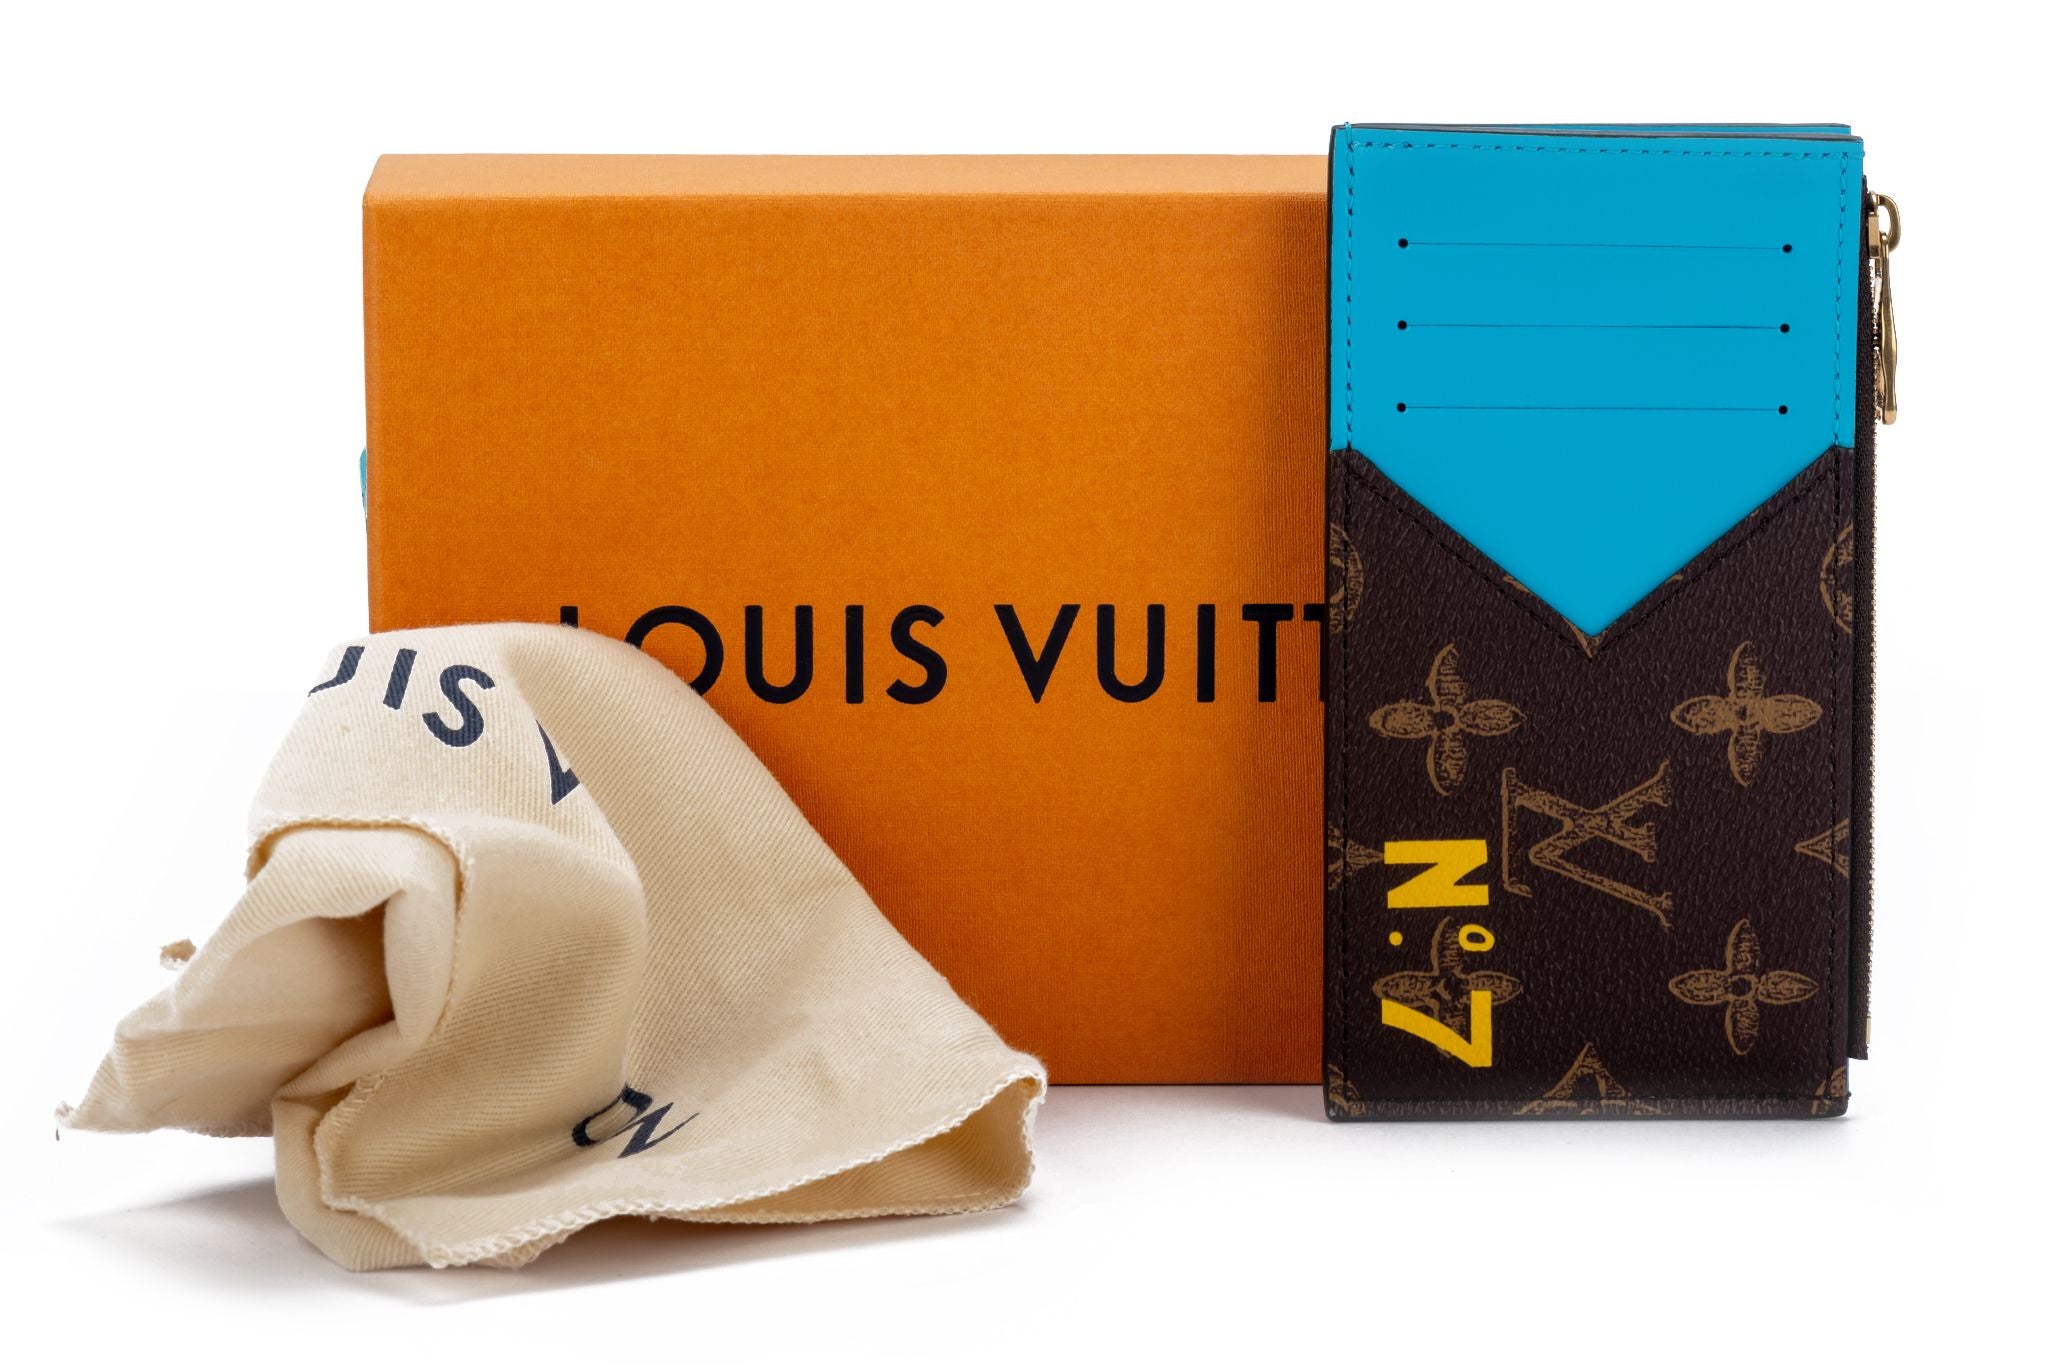 Louis Vuitton CC holder Virgil Abloh - Vintage Lux